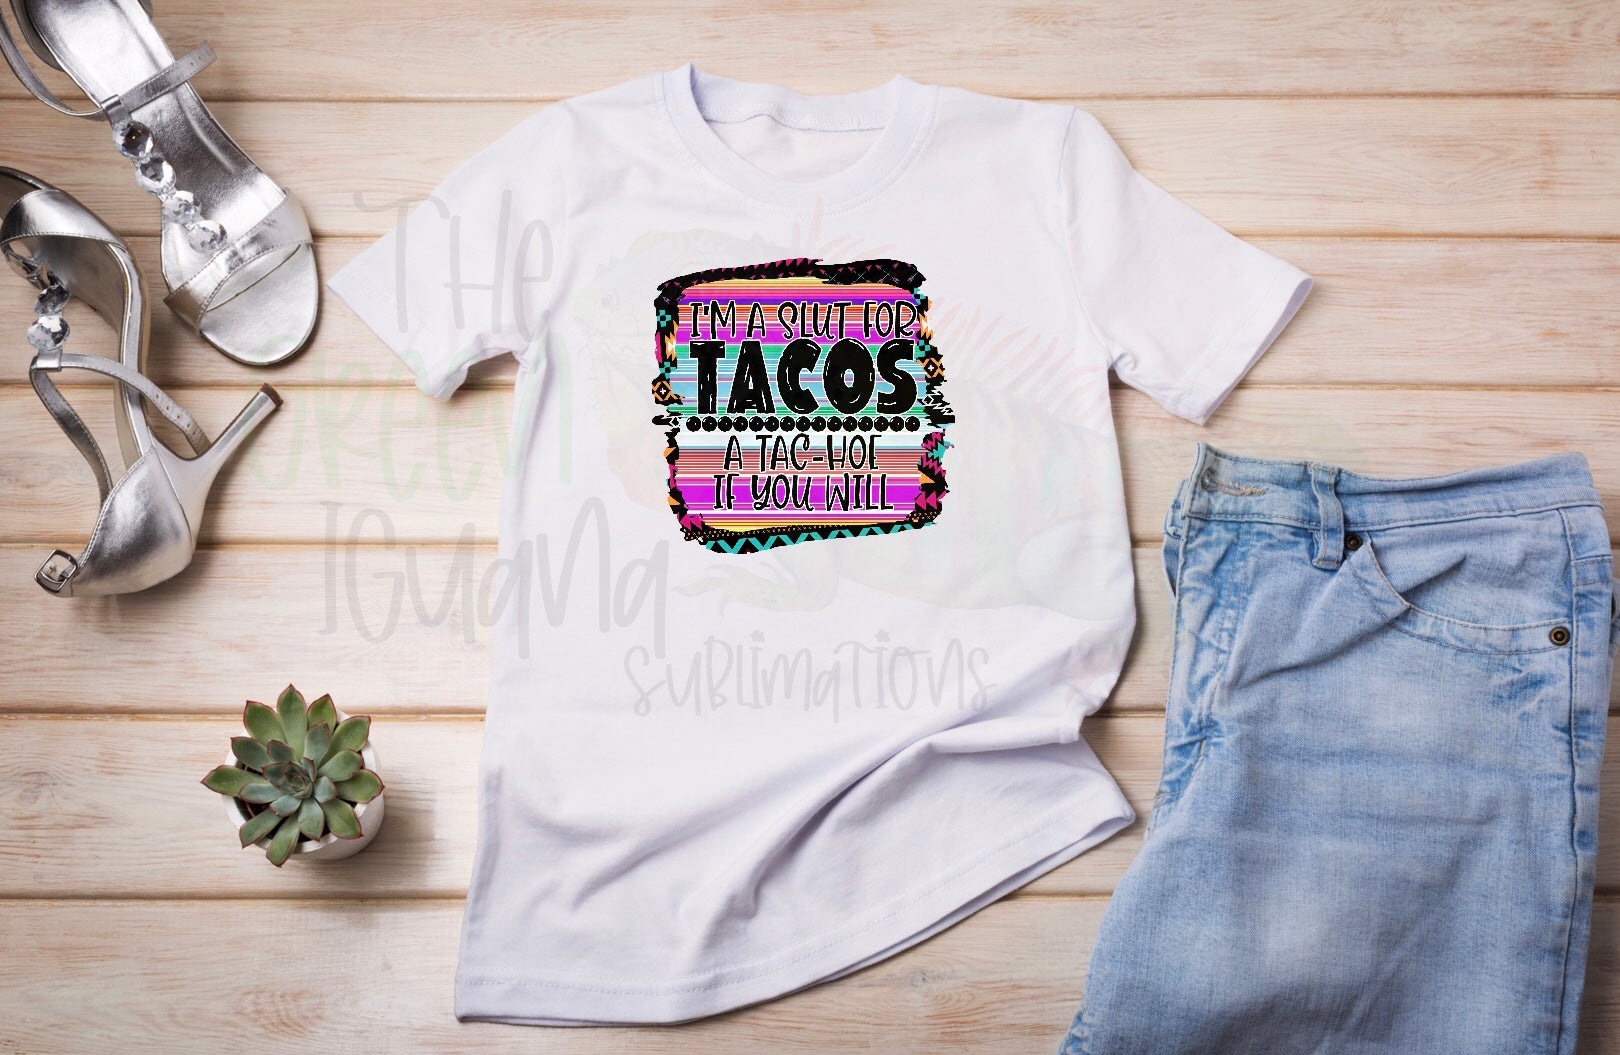 I’m a slut for tacos